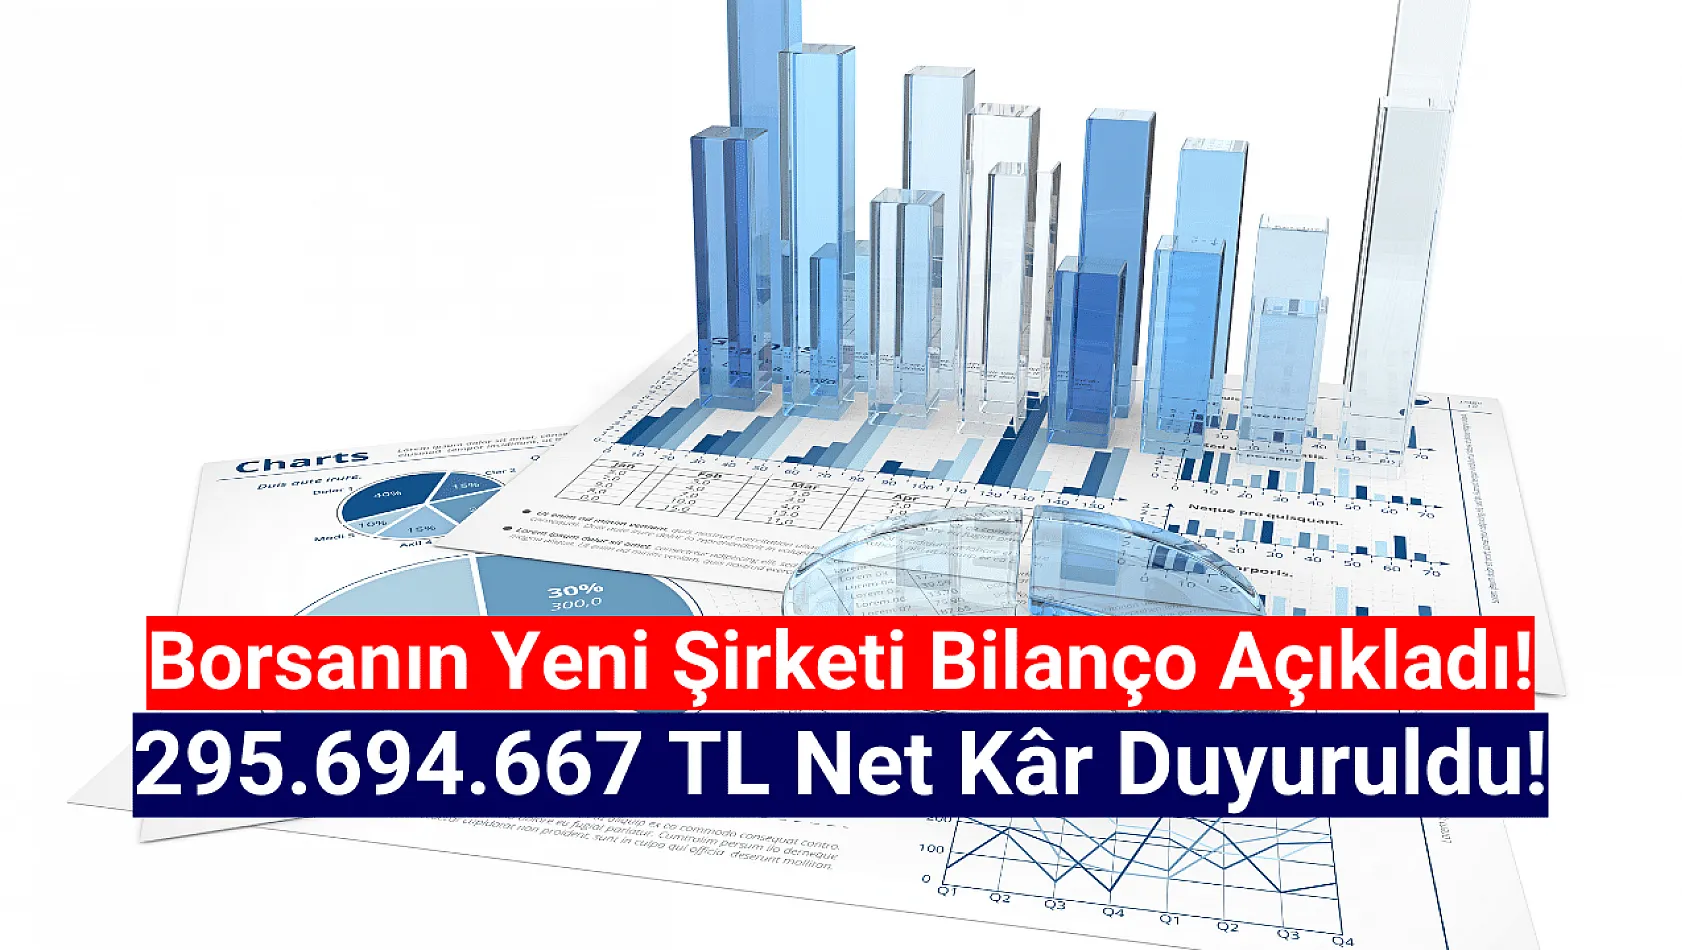 Borsanın yeni şirketi 295.694.667 TL net kâr açıkladı!